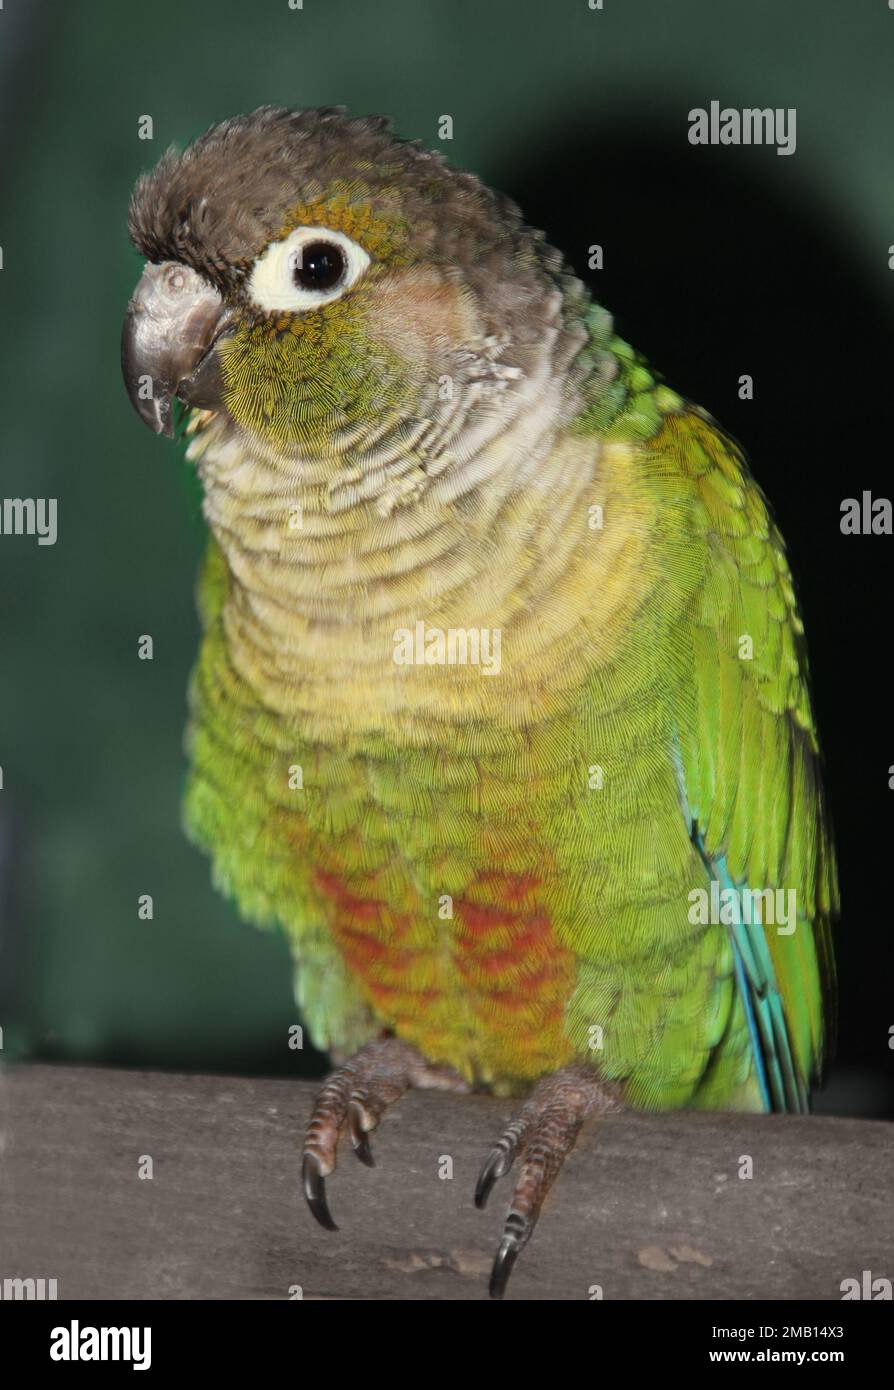 Ein Porträt eines grünen Wangenconures, hoch oben auf einem Holzstock. Sie sehen den Bauch des Vogels und ein Auge. Er sieht sehr süß und freundlich aus Stockfoto